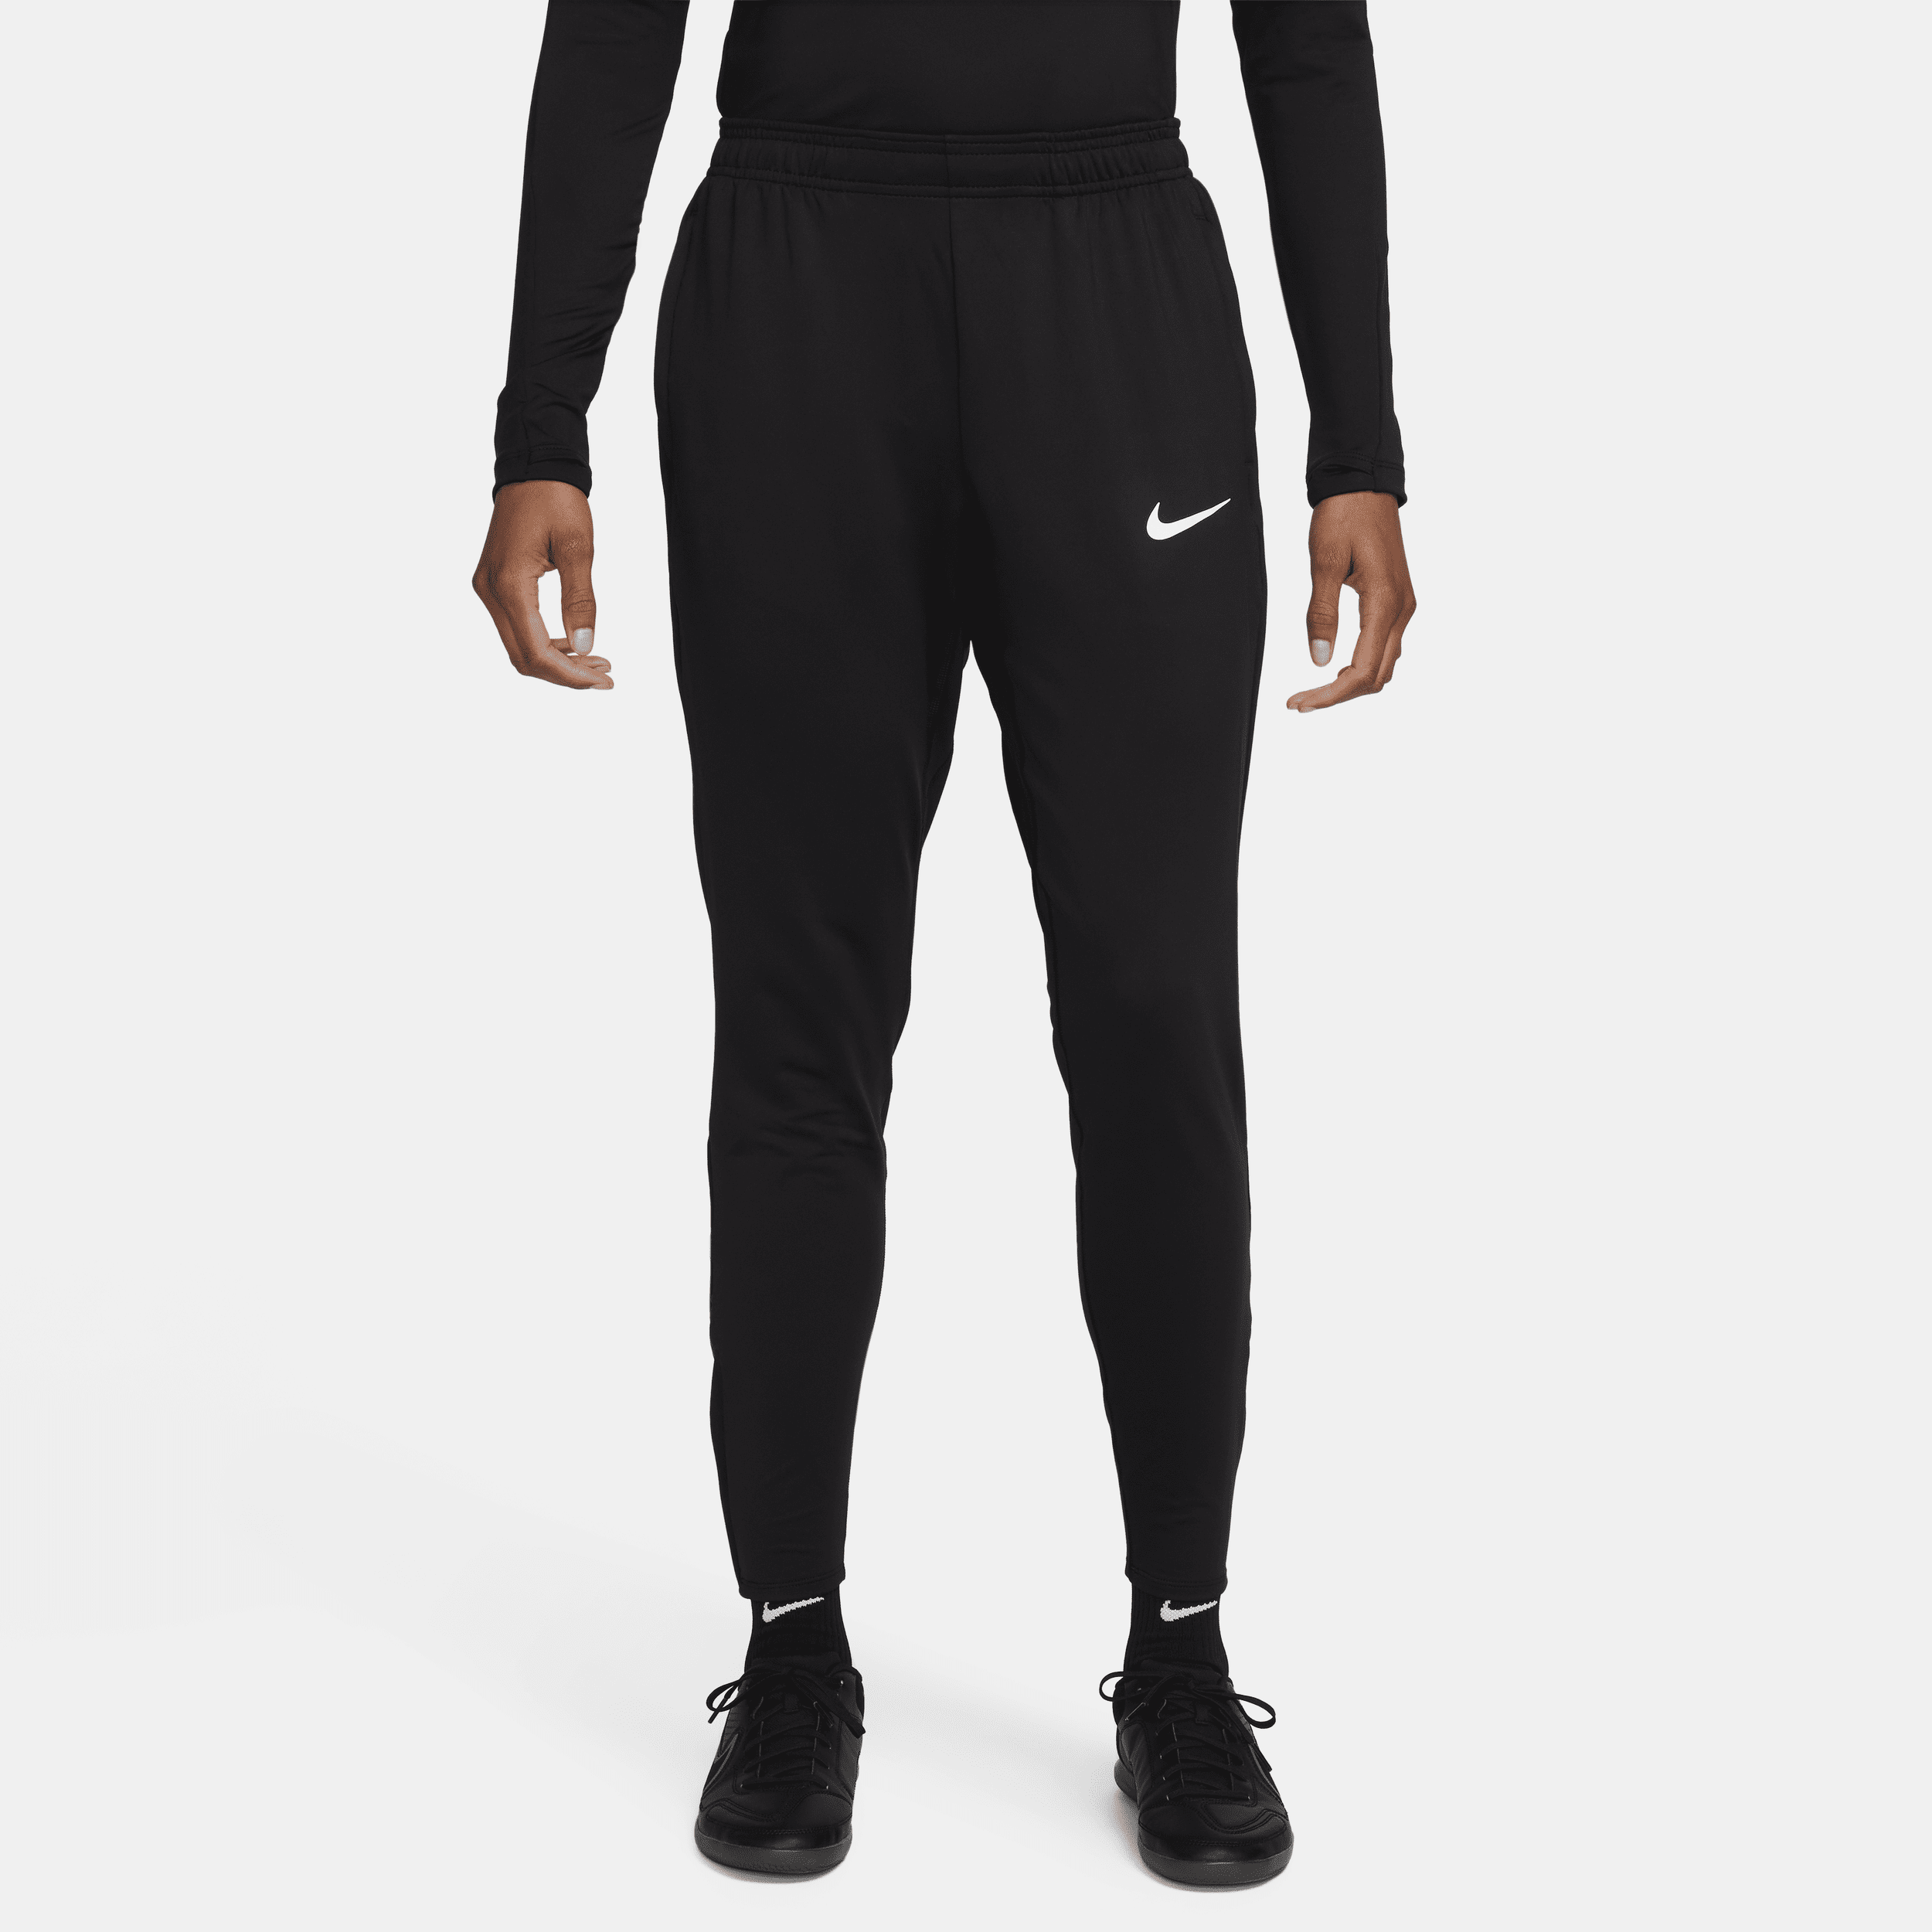 Nike Women's Strike Dri-fit Soccer Pants In Black